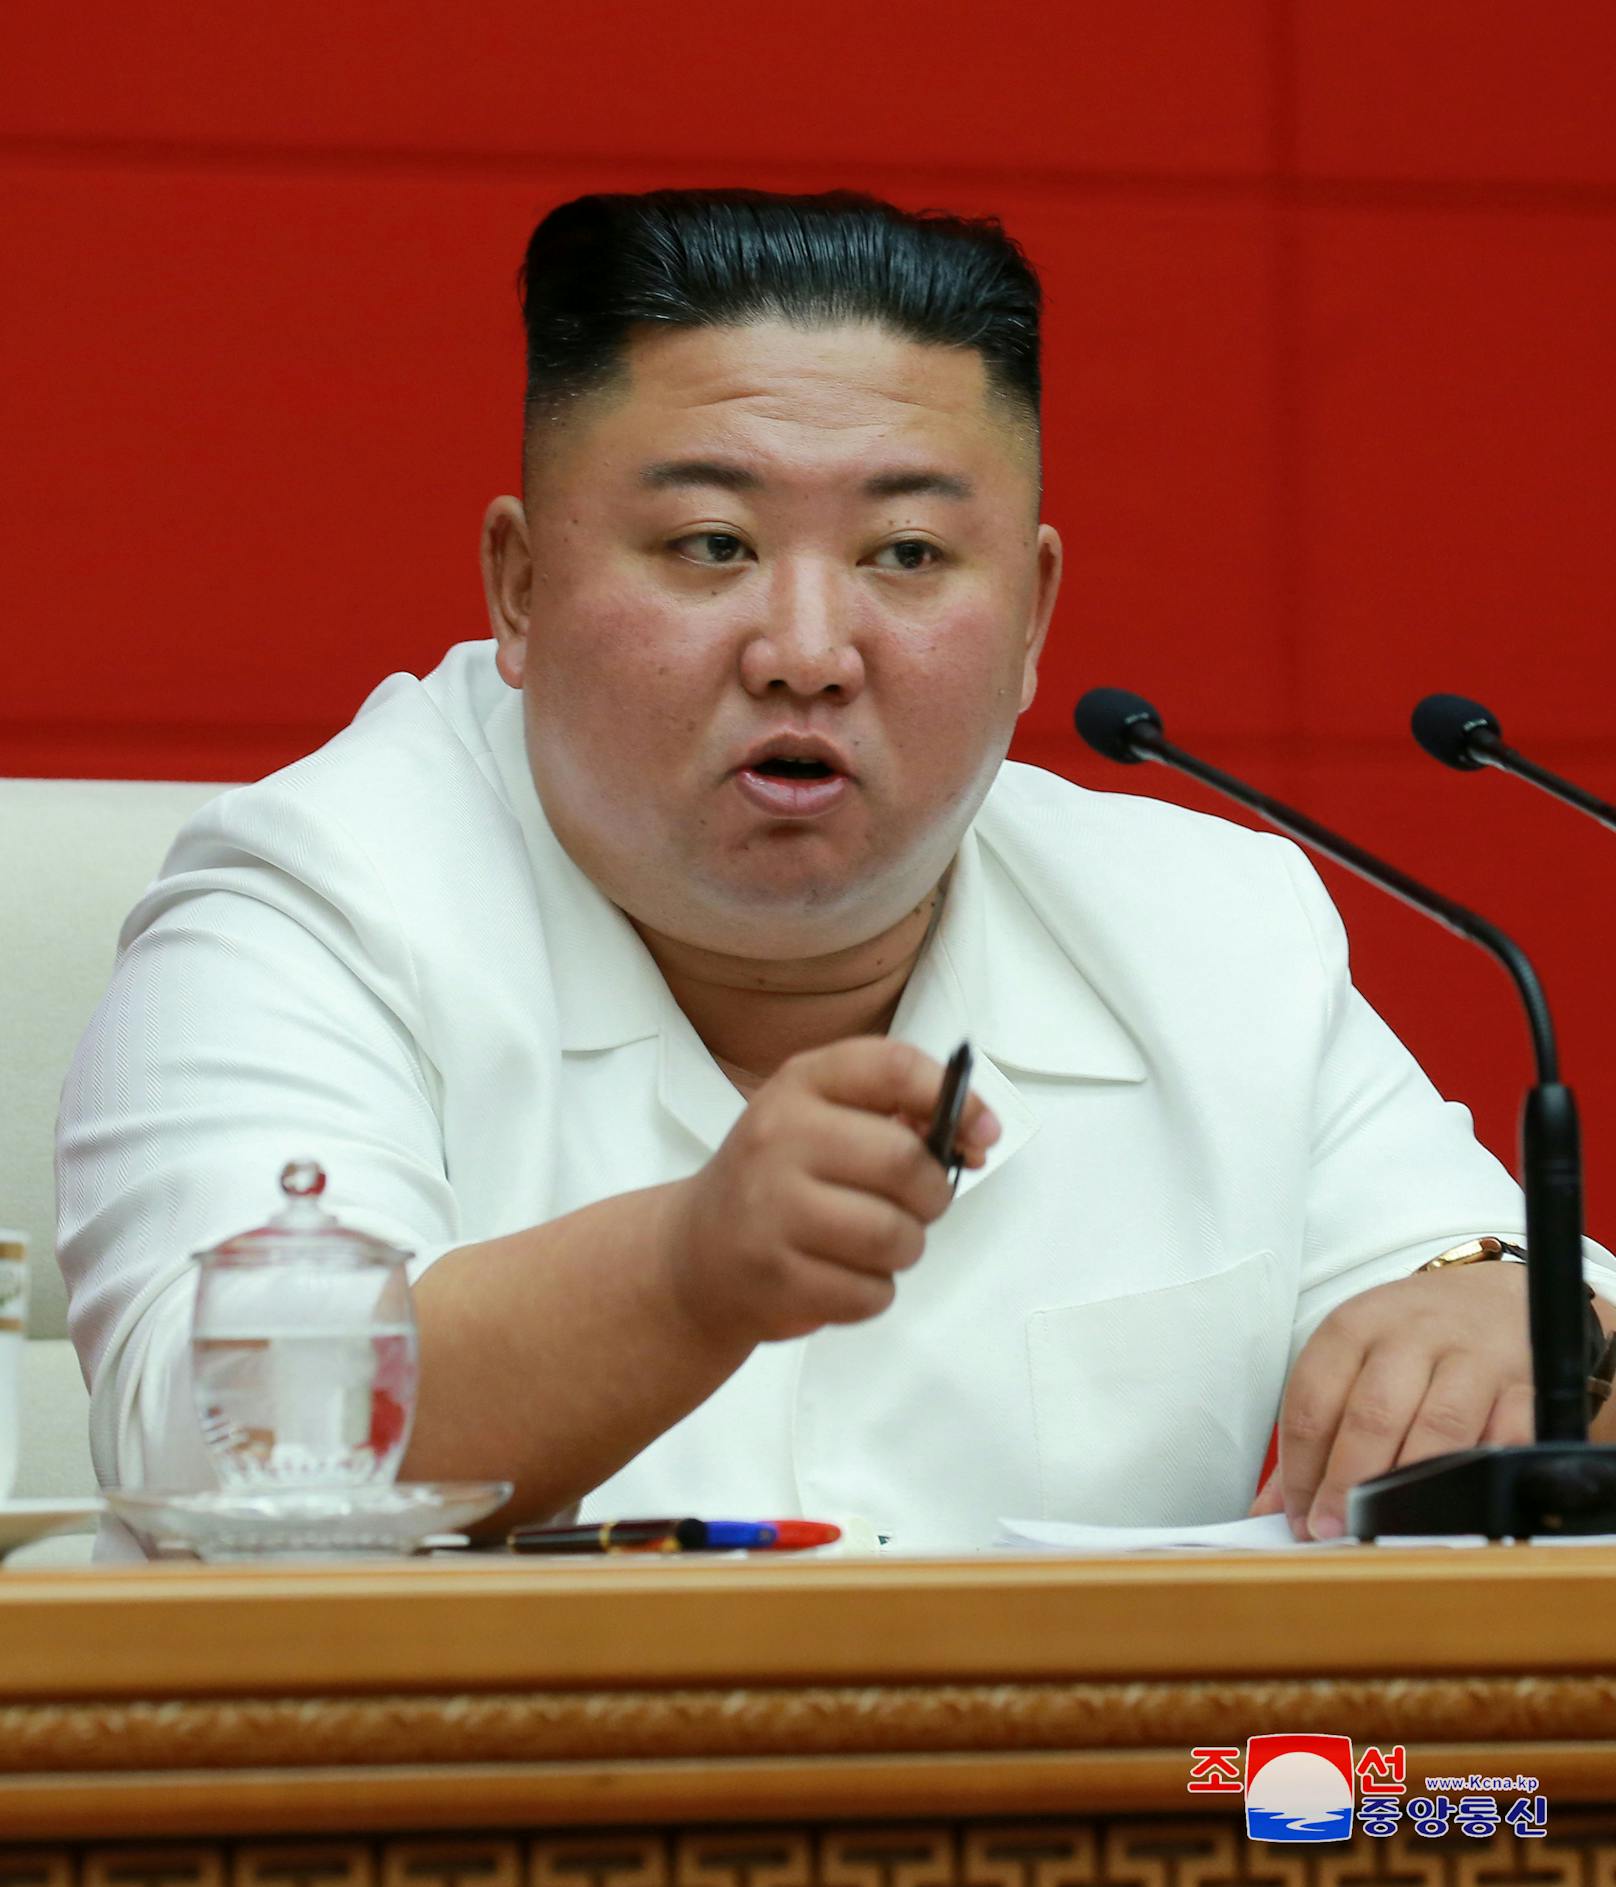 Kim Jong-un bei einer Plenarsitzung in Pjöngjang. Die Fotos wurden von Nordkoreas Nachrichtenagentur KCNA am 20. August 2020 veröffentlicht.